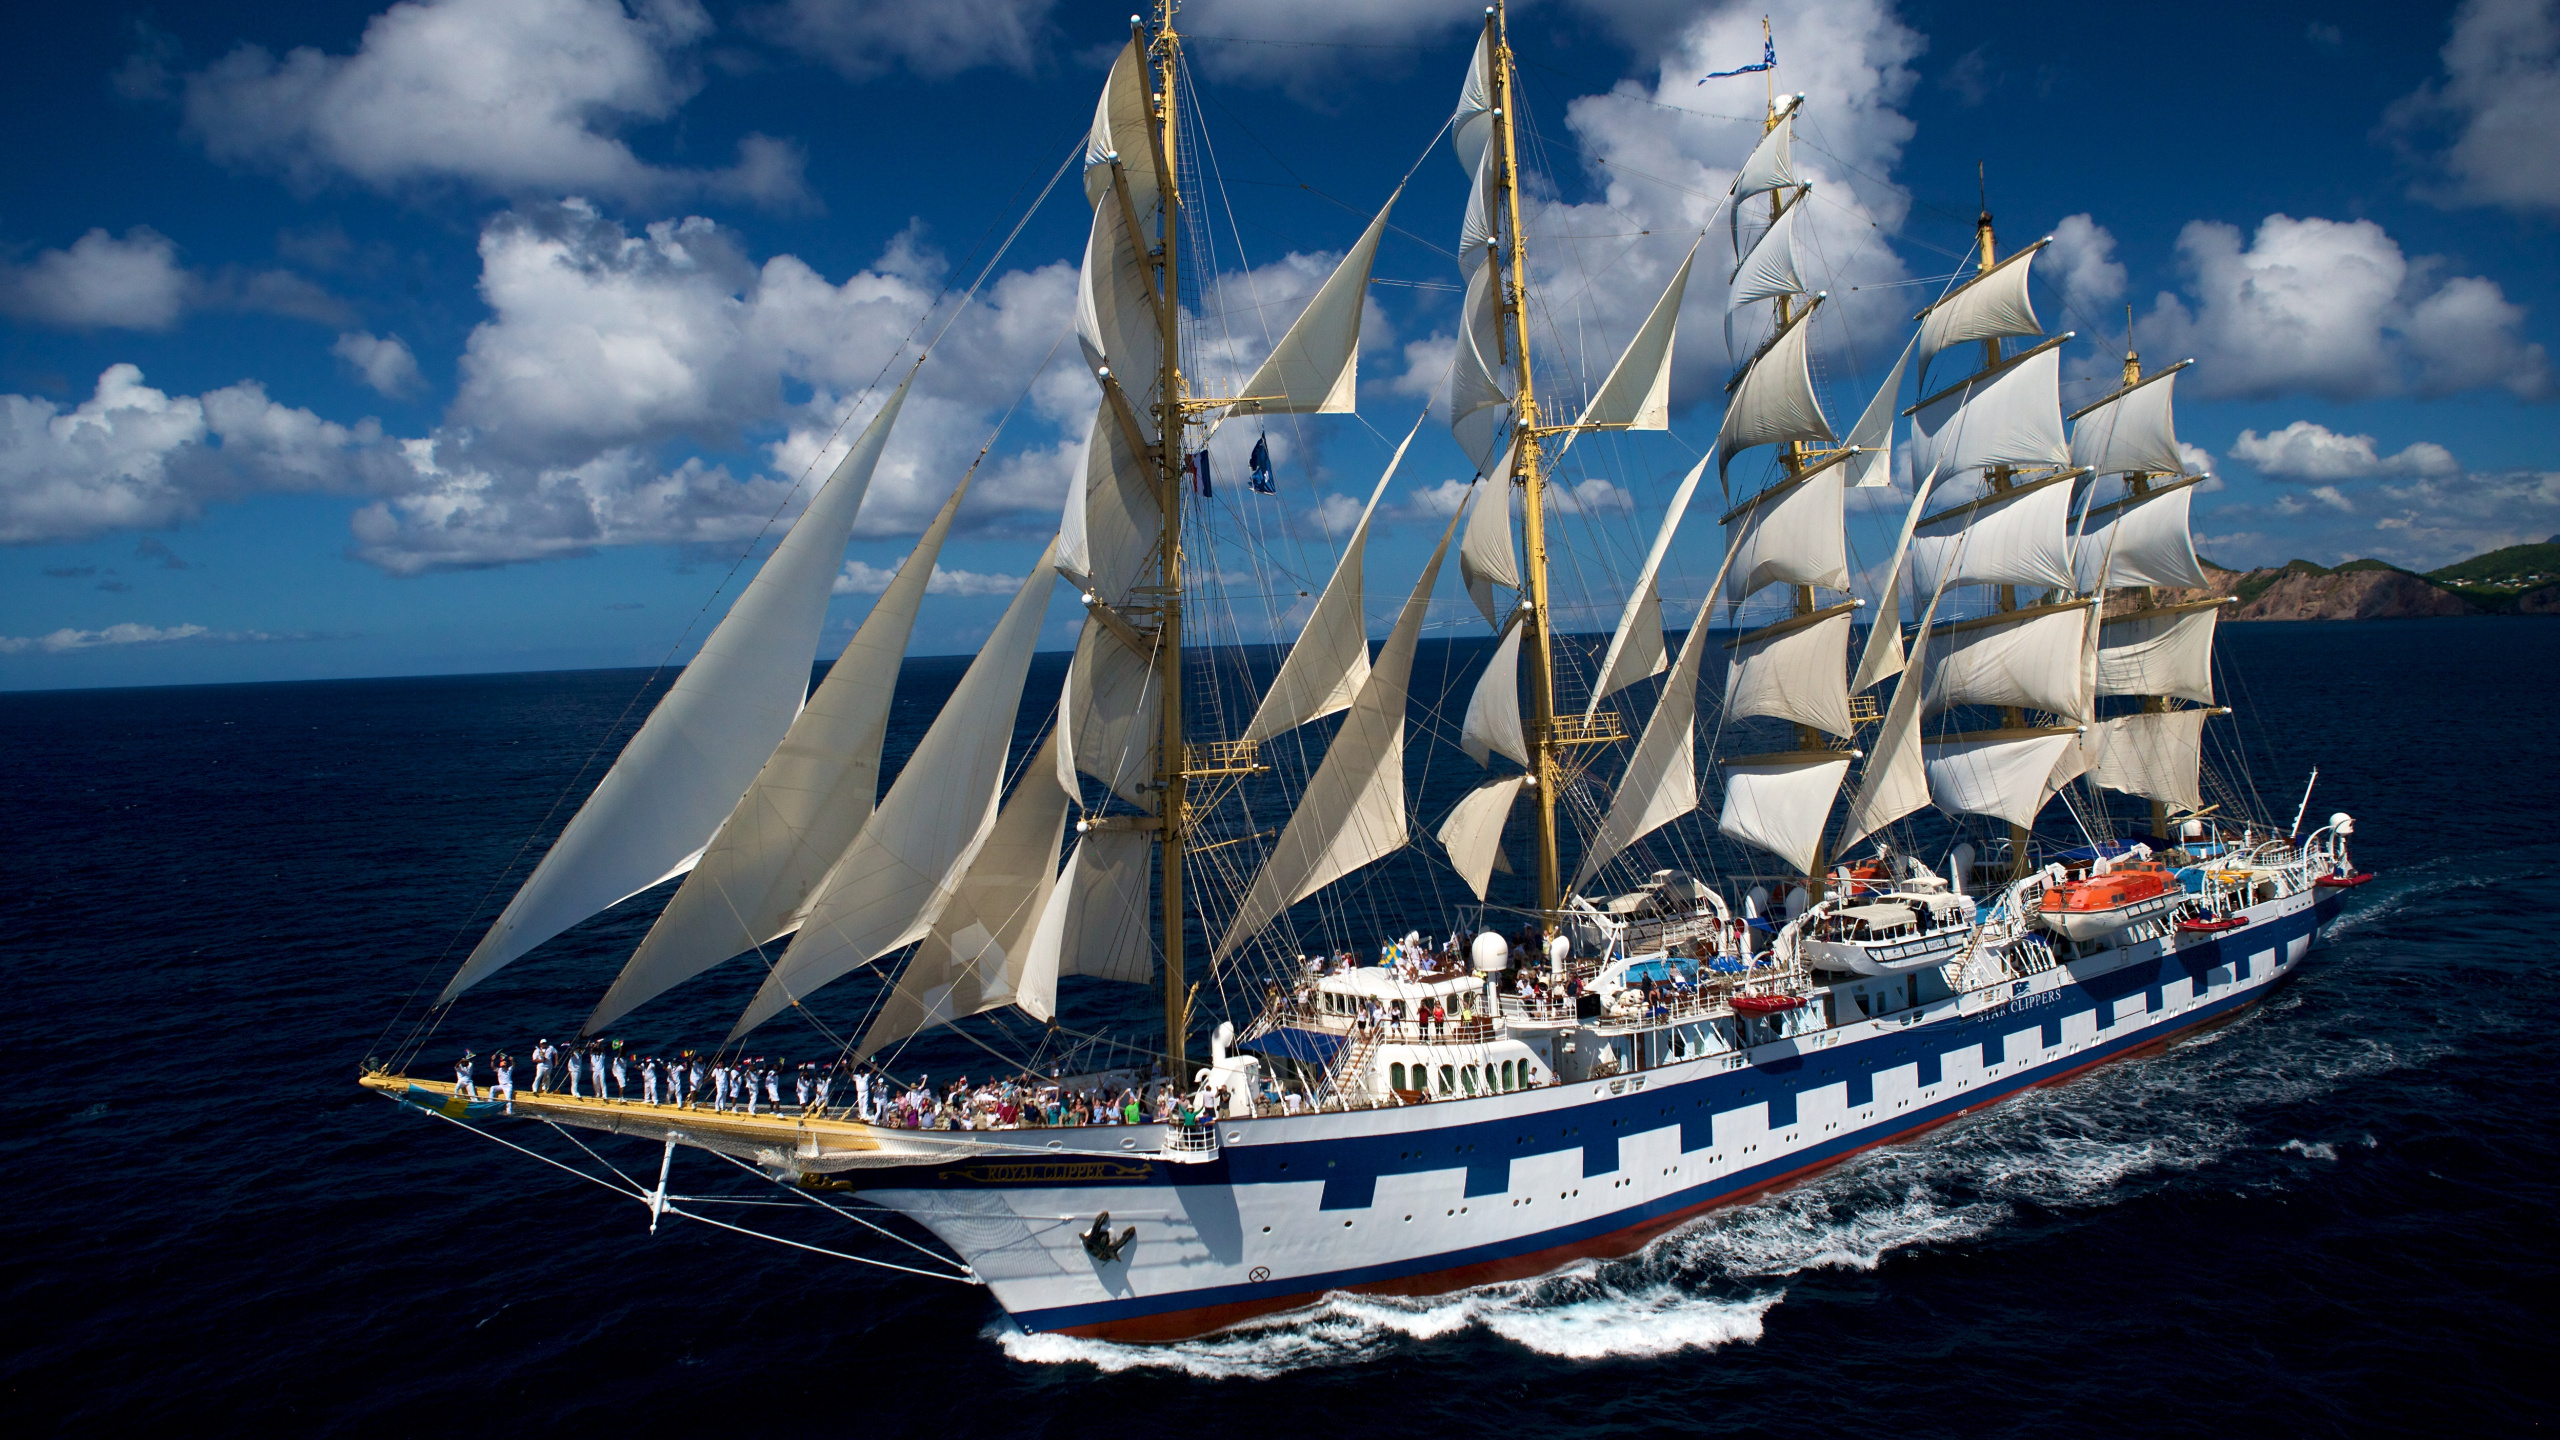 游船, Barquentine, 高船, 帆船, 桅杆 壁纸 2560x1440 允许